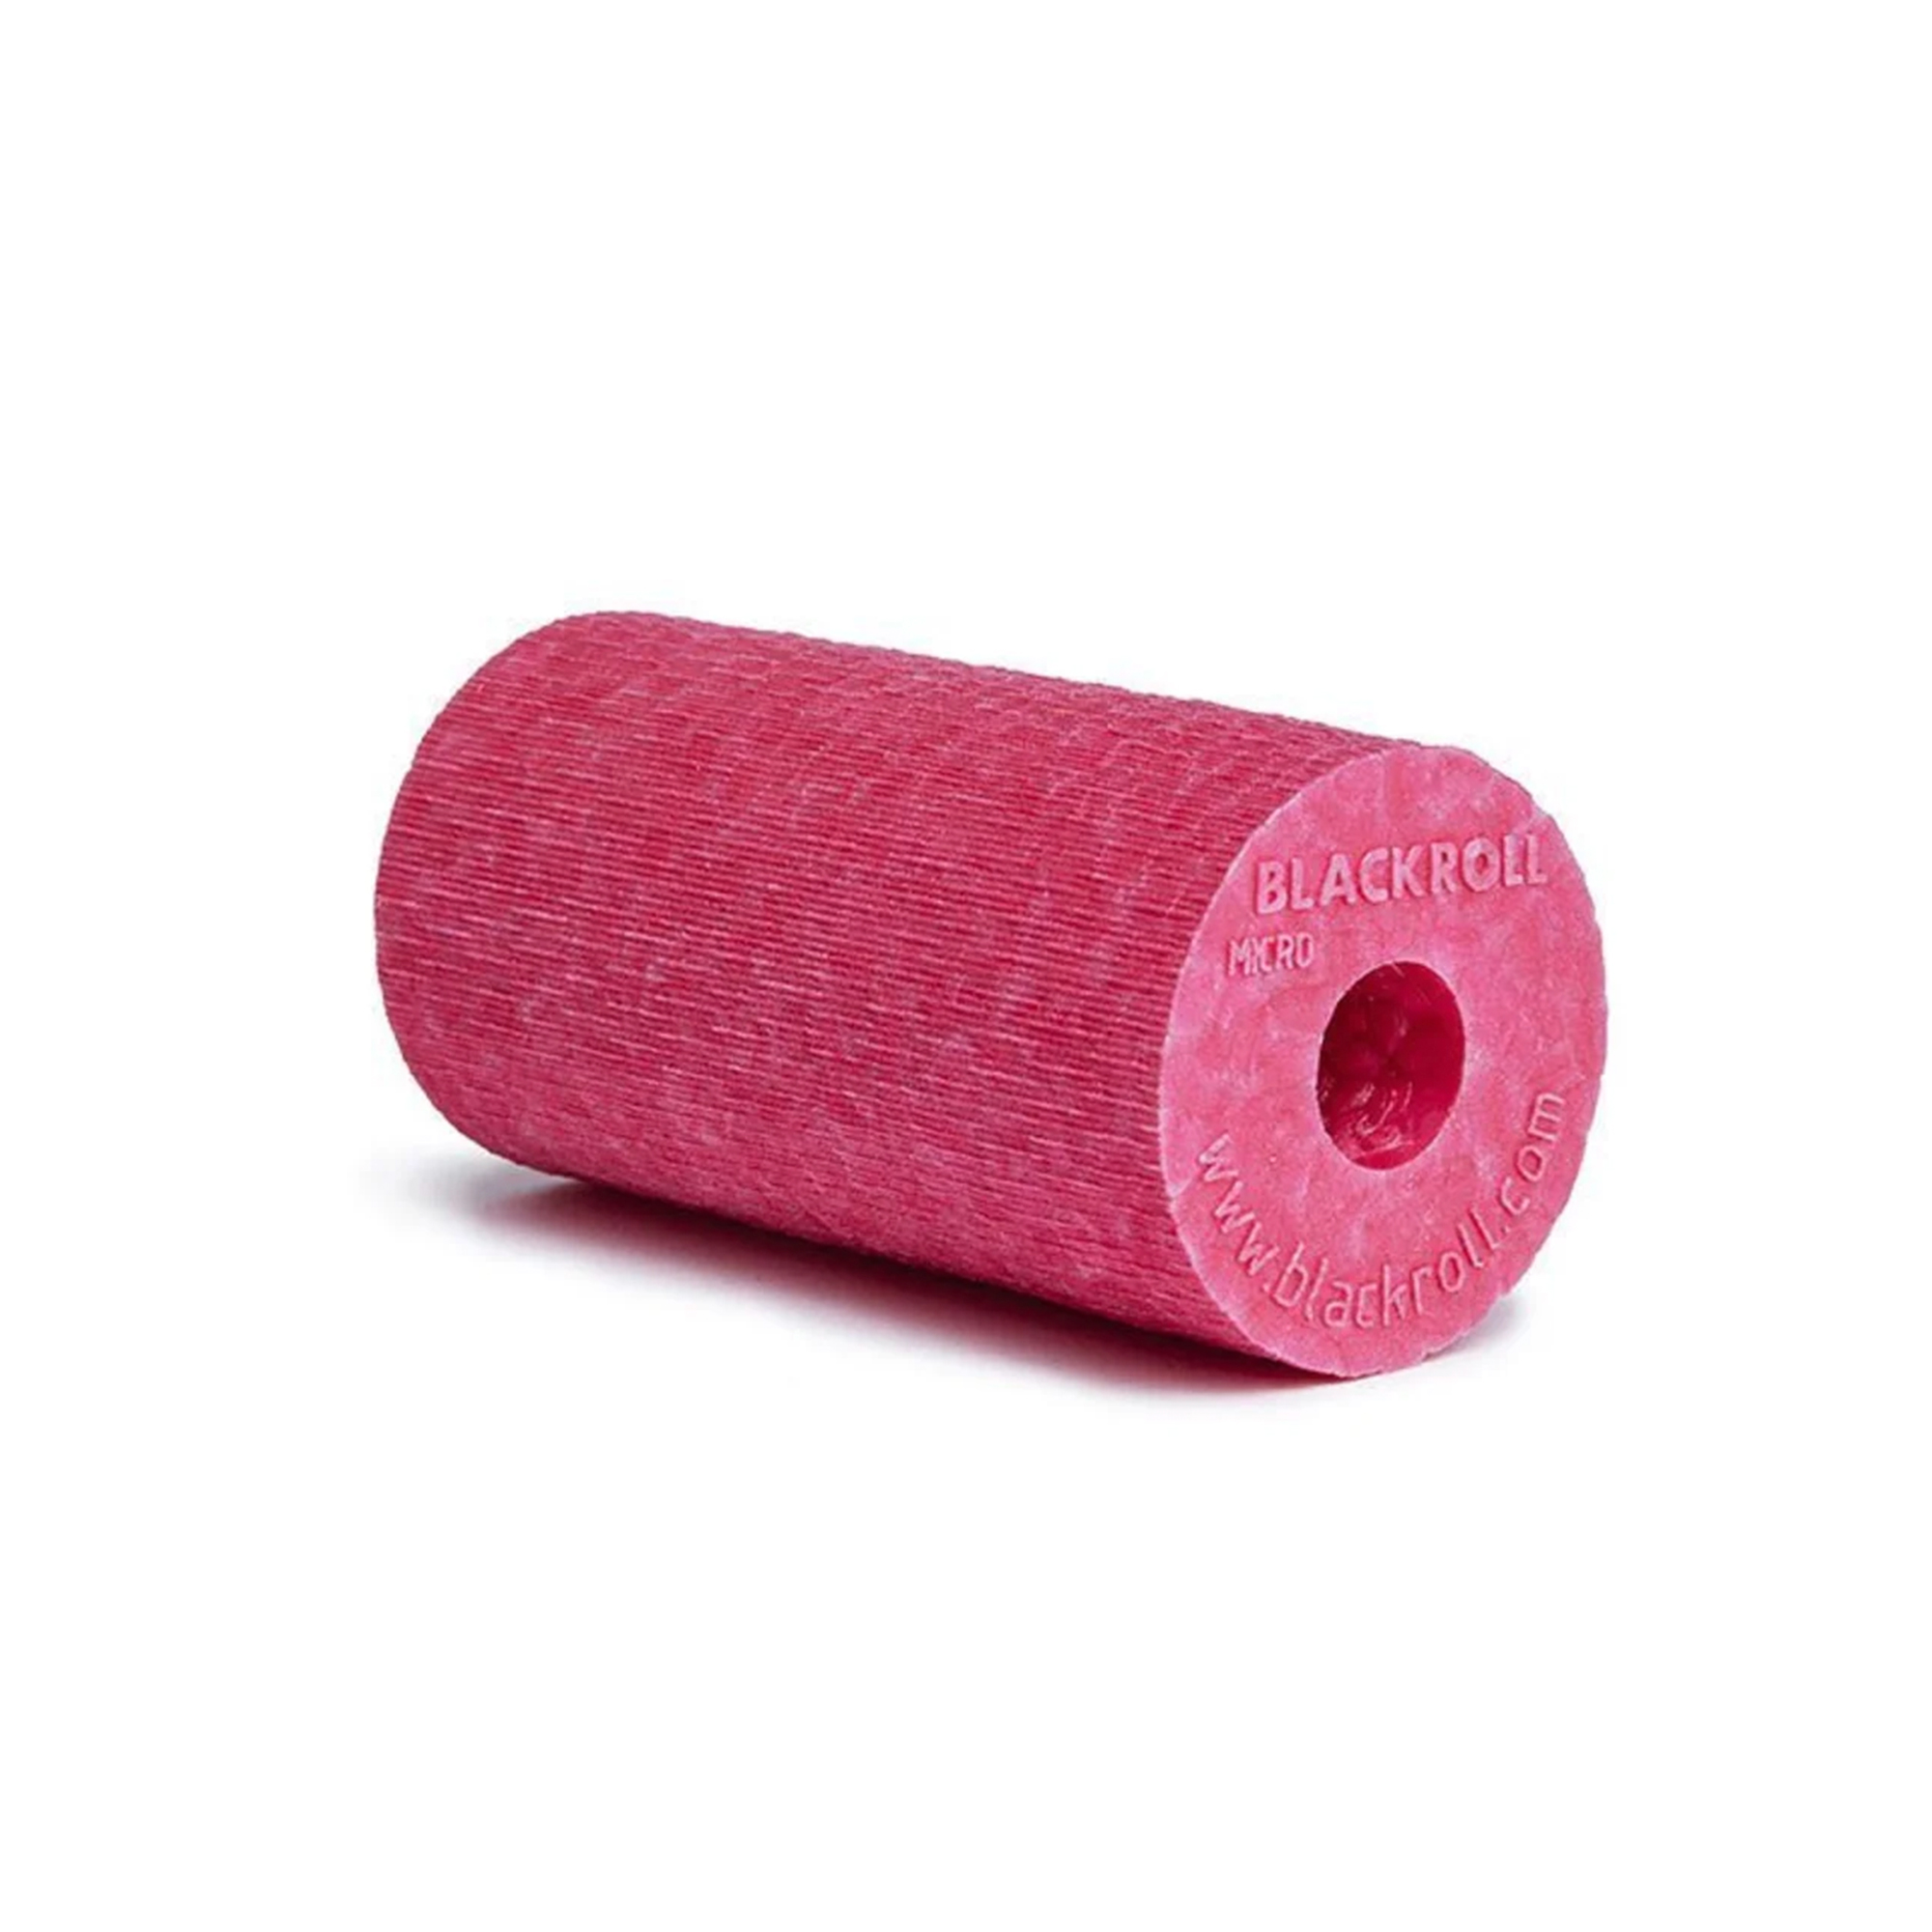 Brug Blackroll Micro Foam Roller Pink - 6x3 cm til en forbedret oplevelse